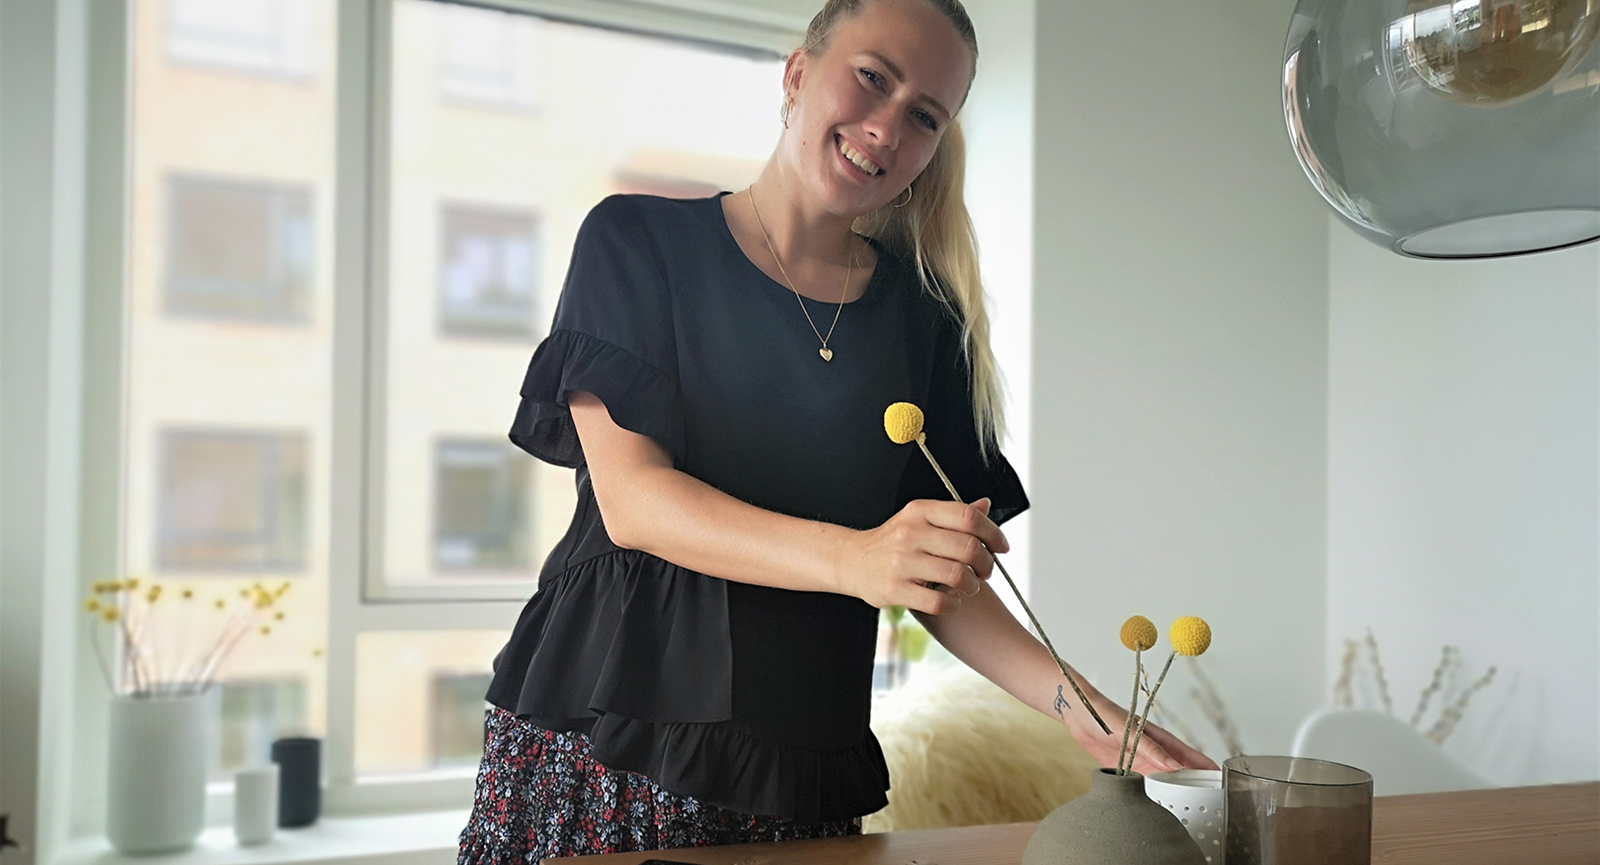 Handelsøkonom Cecilie Blaaberg står bag et spisebord i en lejlighed og smiler mod kameraet med ryggen til et vindue. Hun er i gang med at anrette tre gule blomster i en rund lerkrukke på bordet.